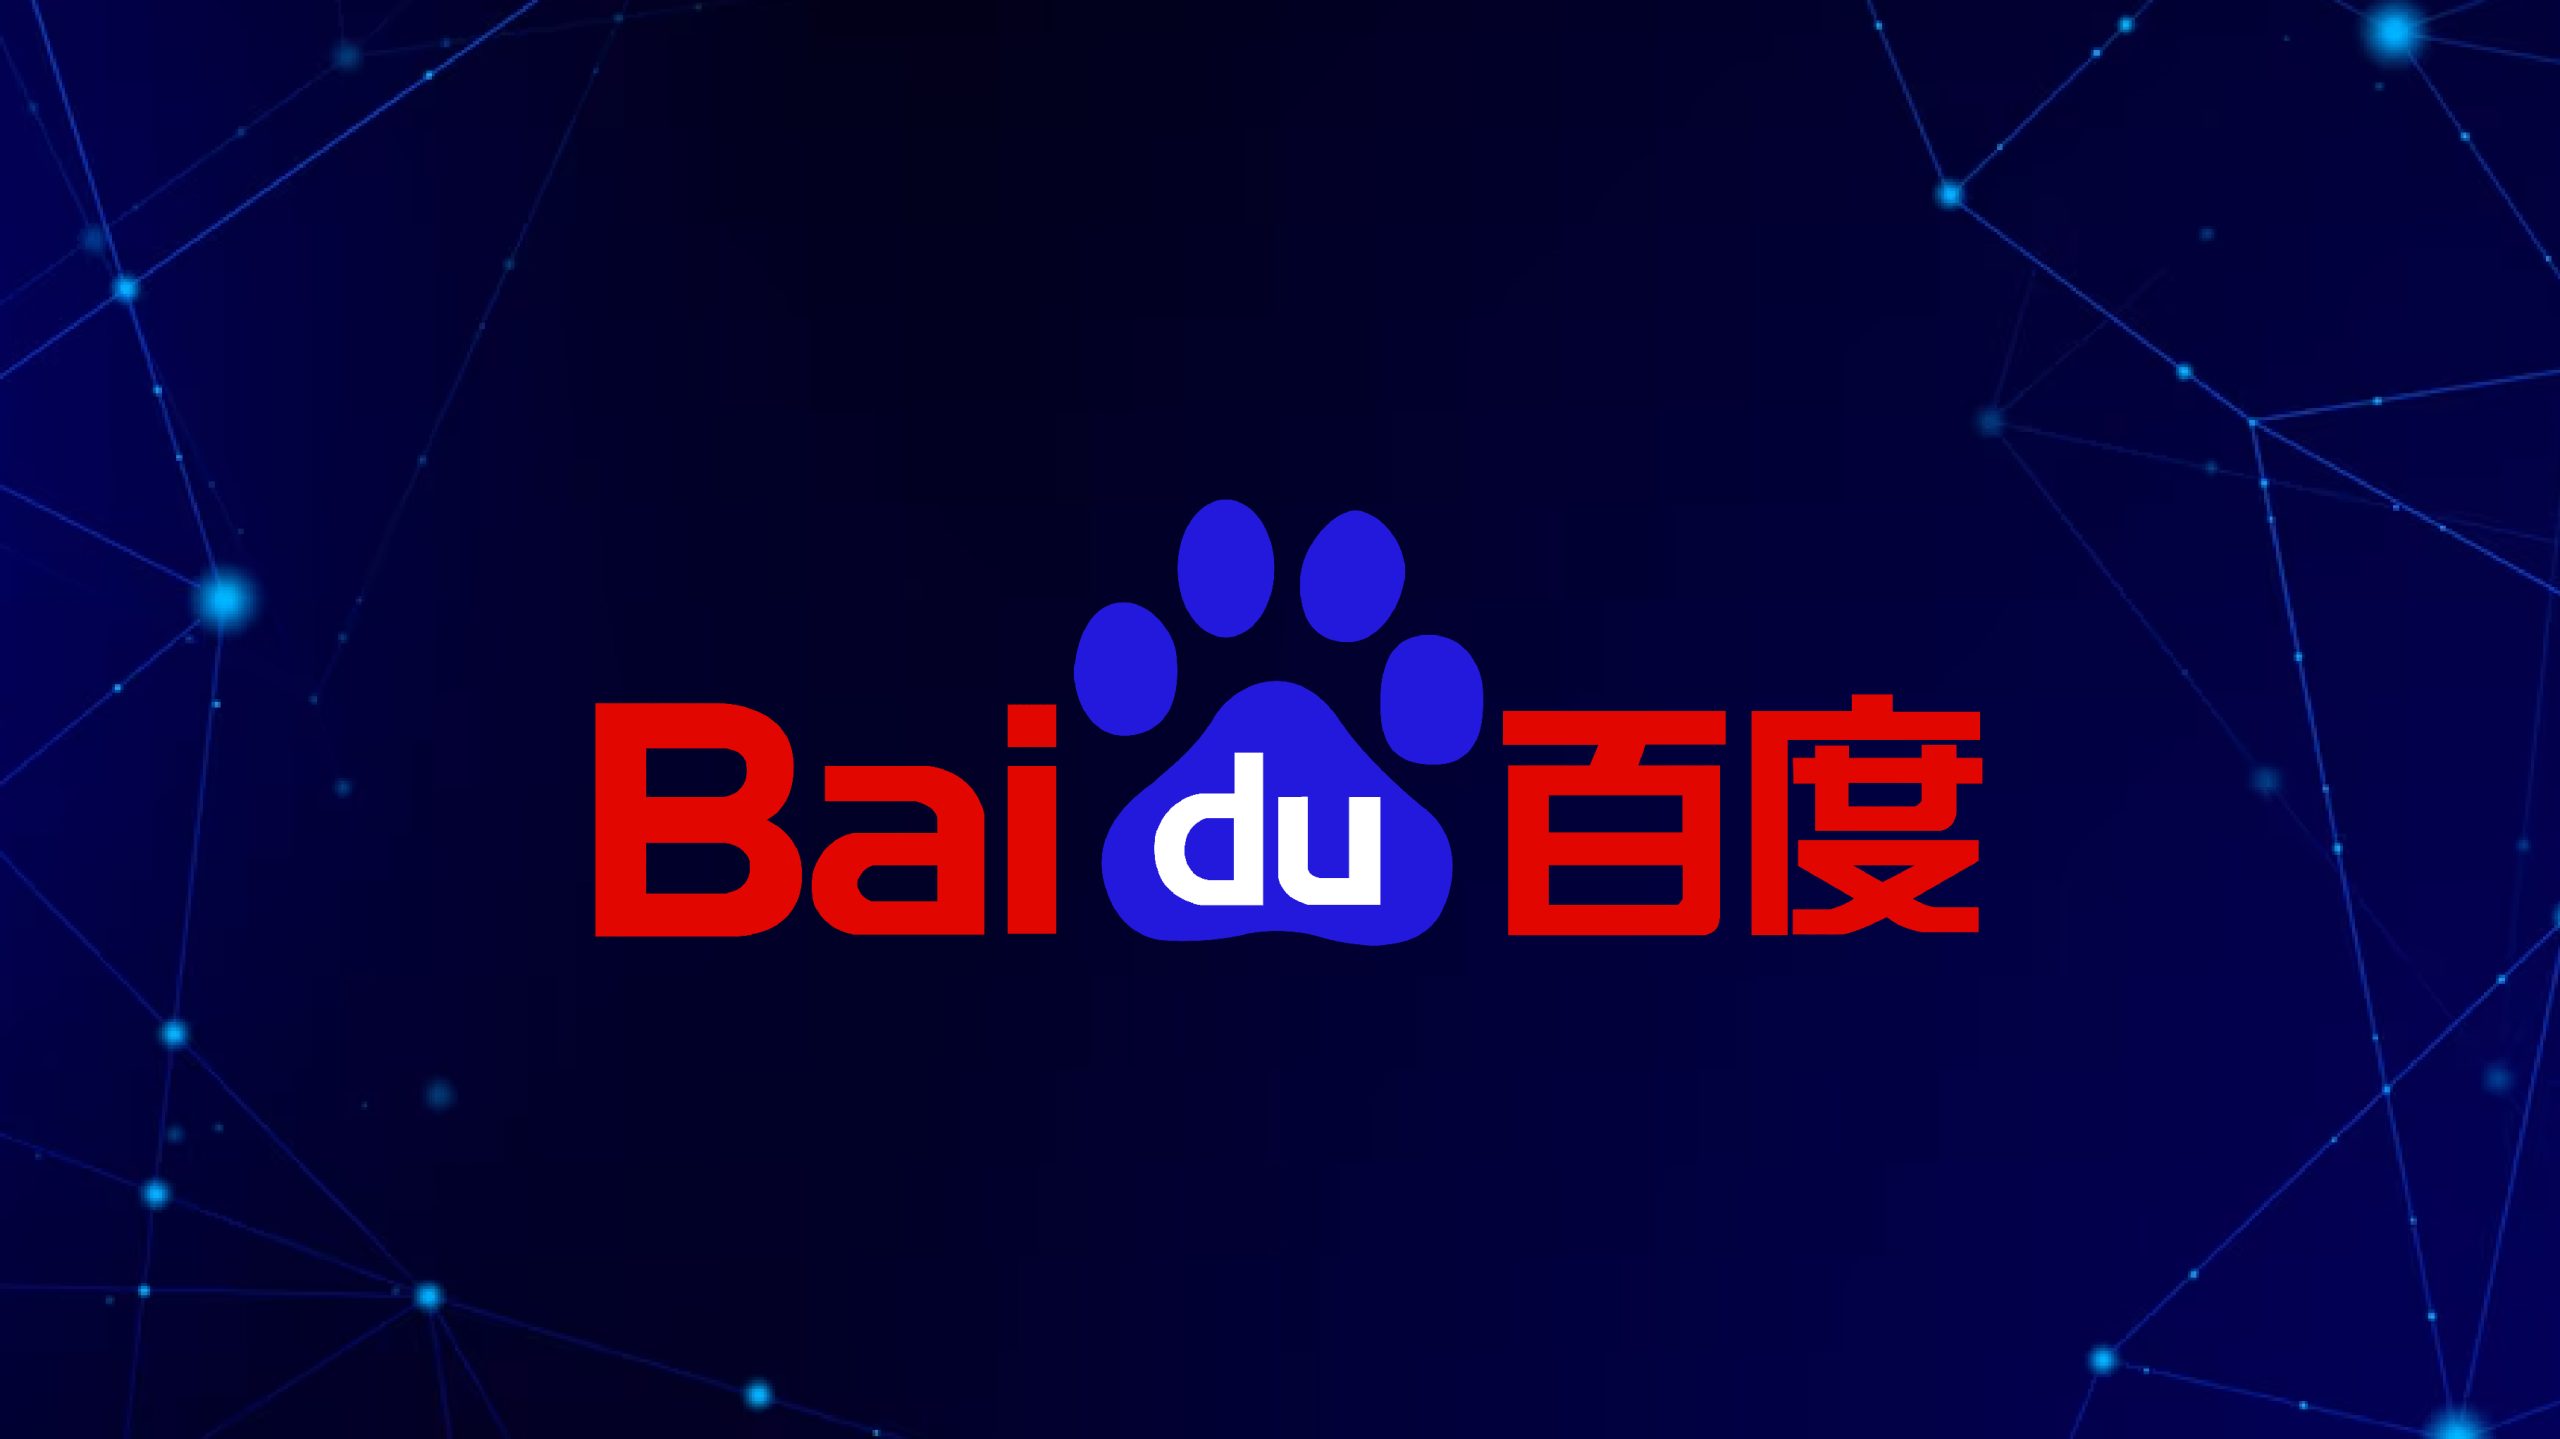 अलीबाबा और Baidu लंबे संदेशों को संभालने के लिए चैटबॉट्स को अपग्रेड करने में जुटे हैं